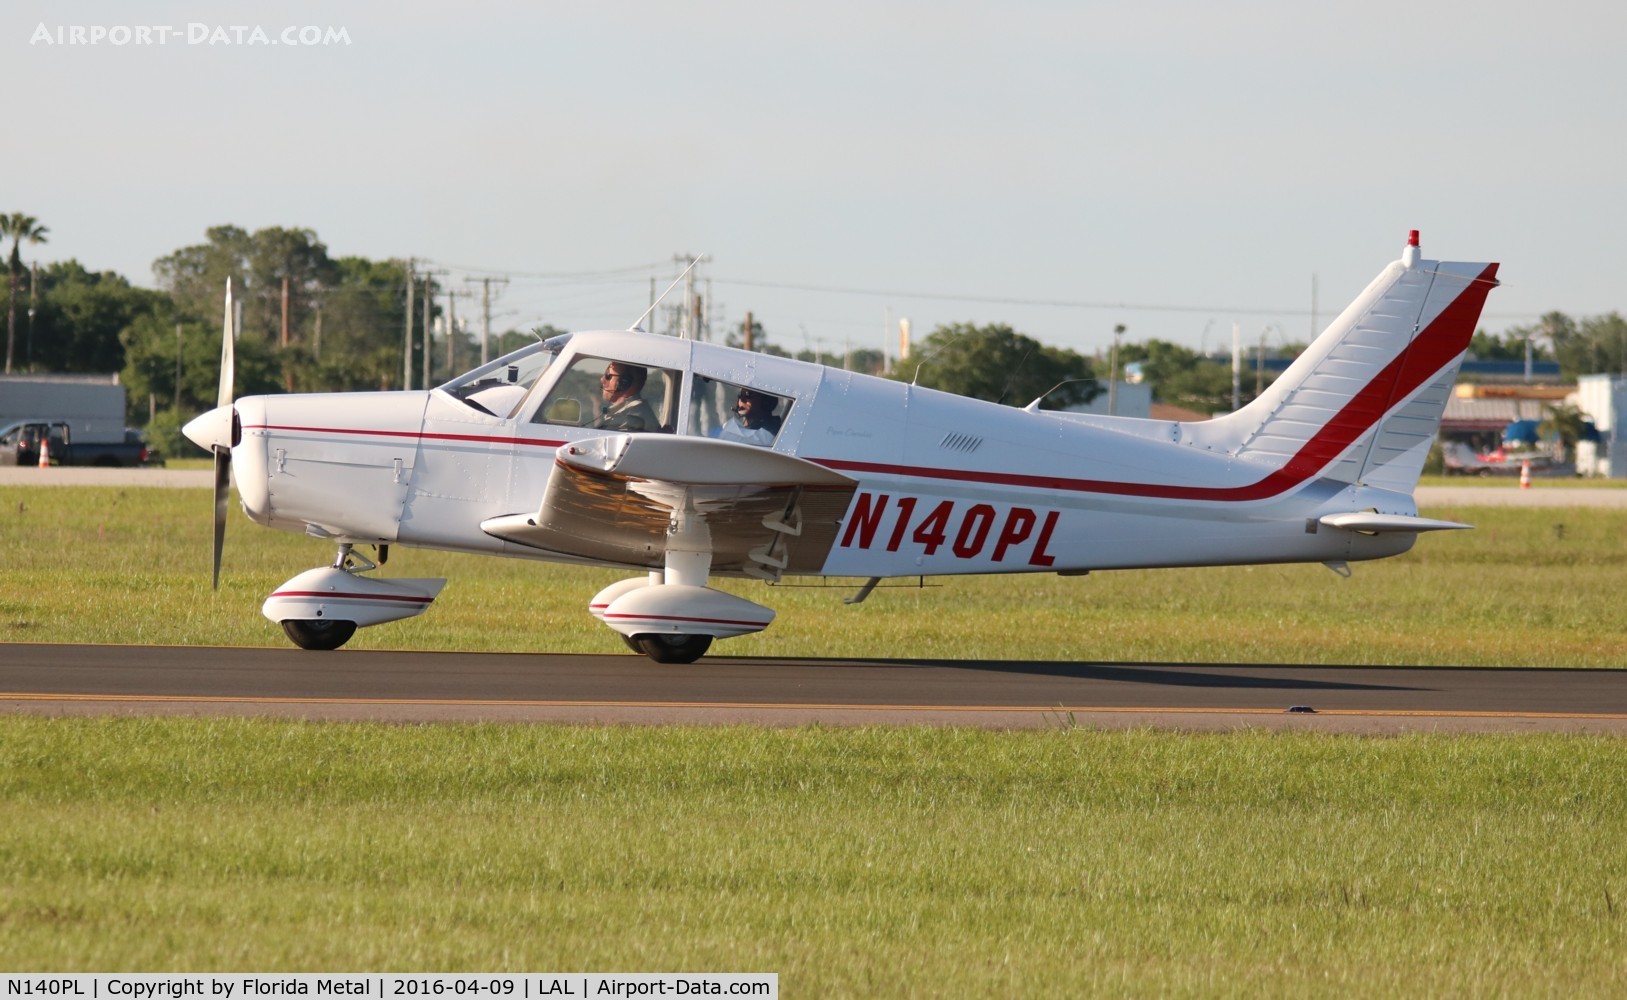 N140PL, 1973 Piper PA-28-140 C/N 28-7325663, PA-28-140